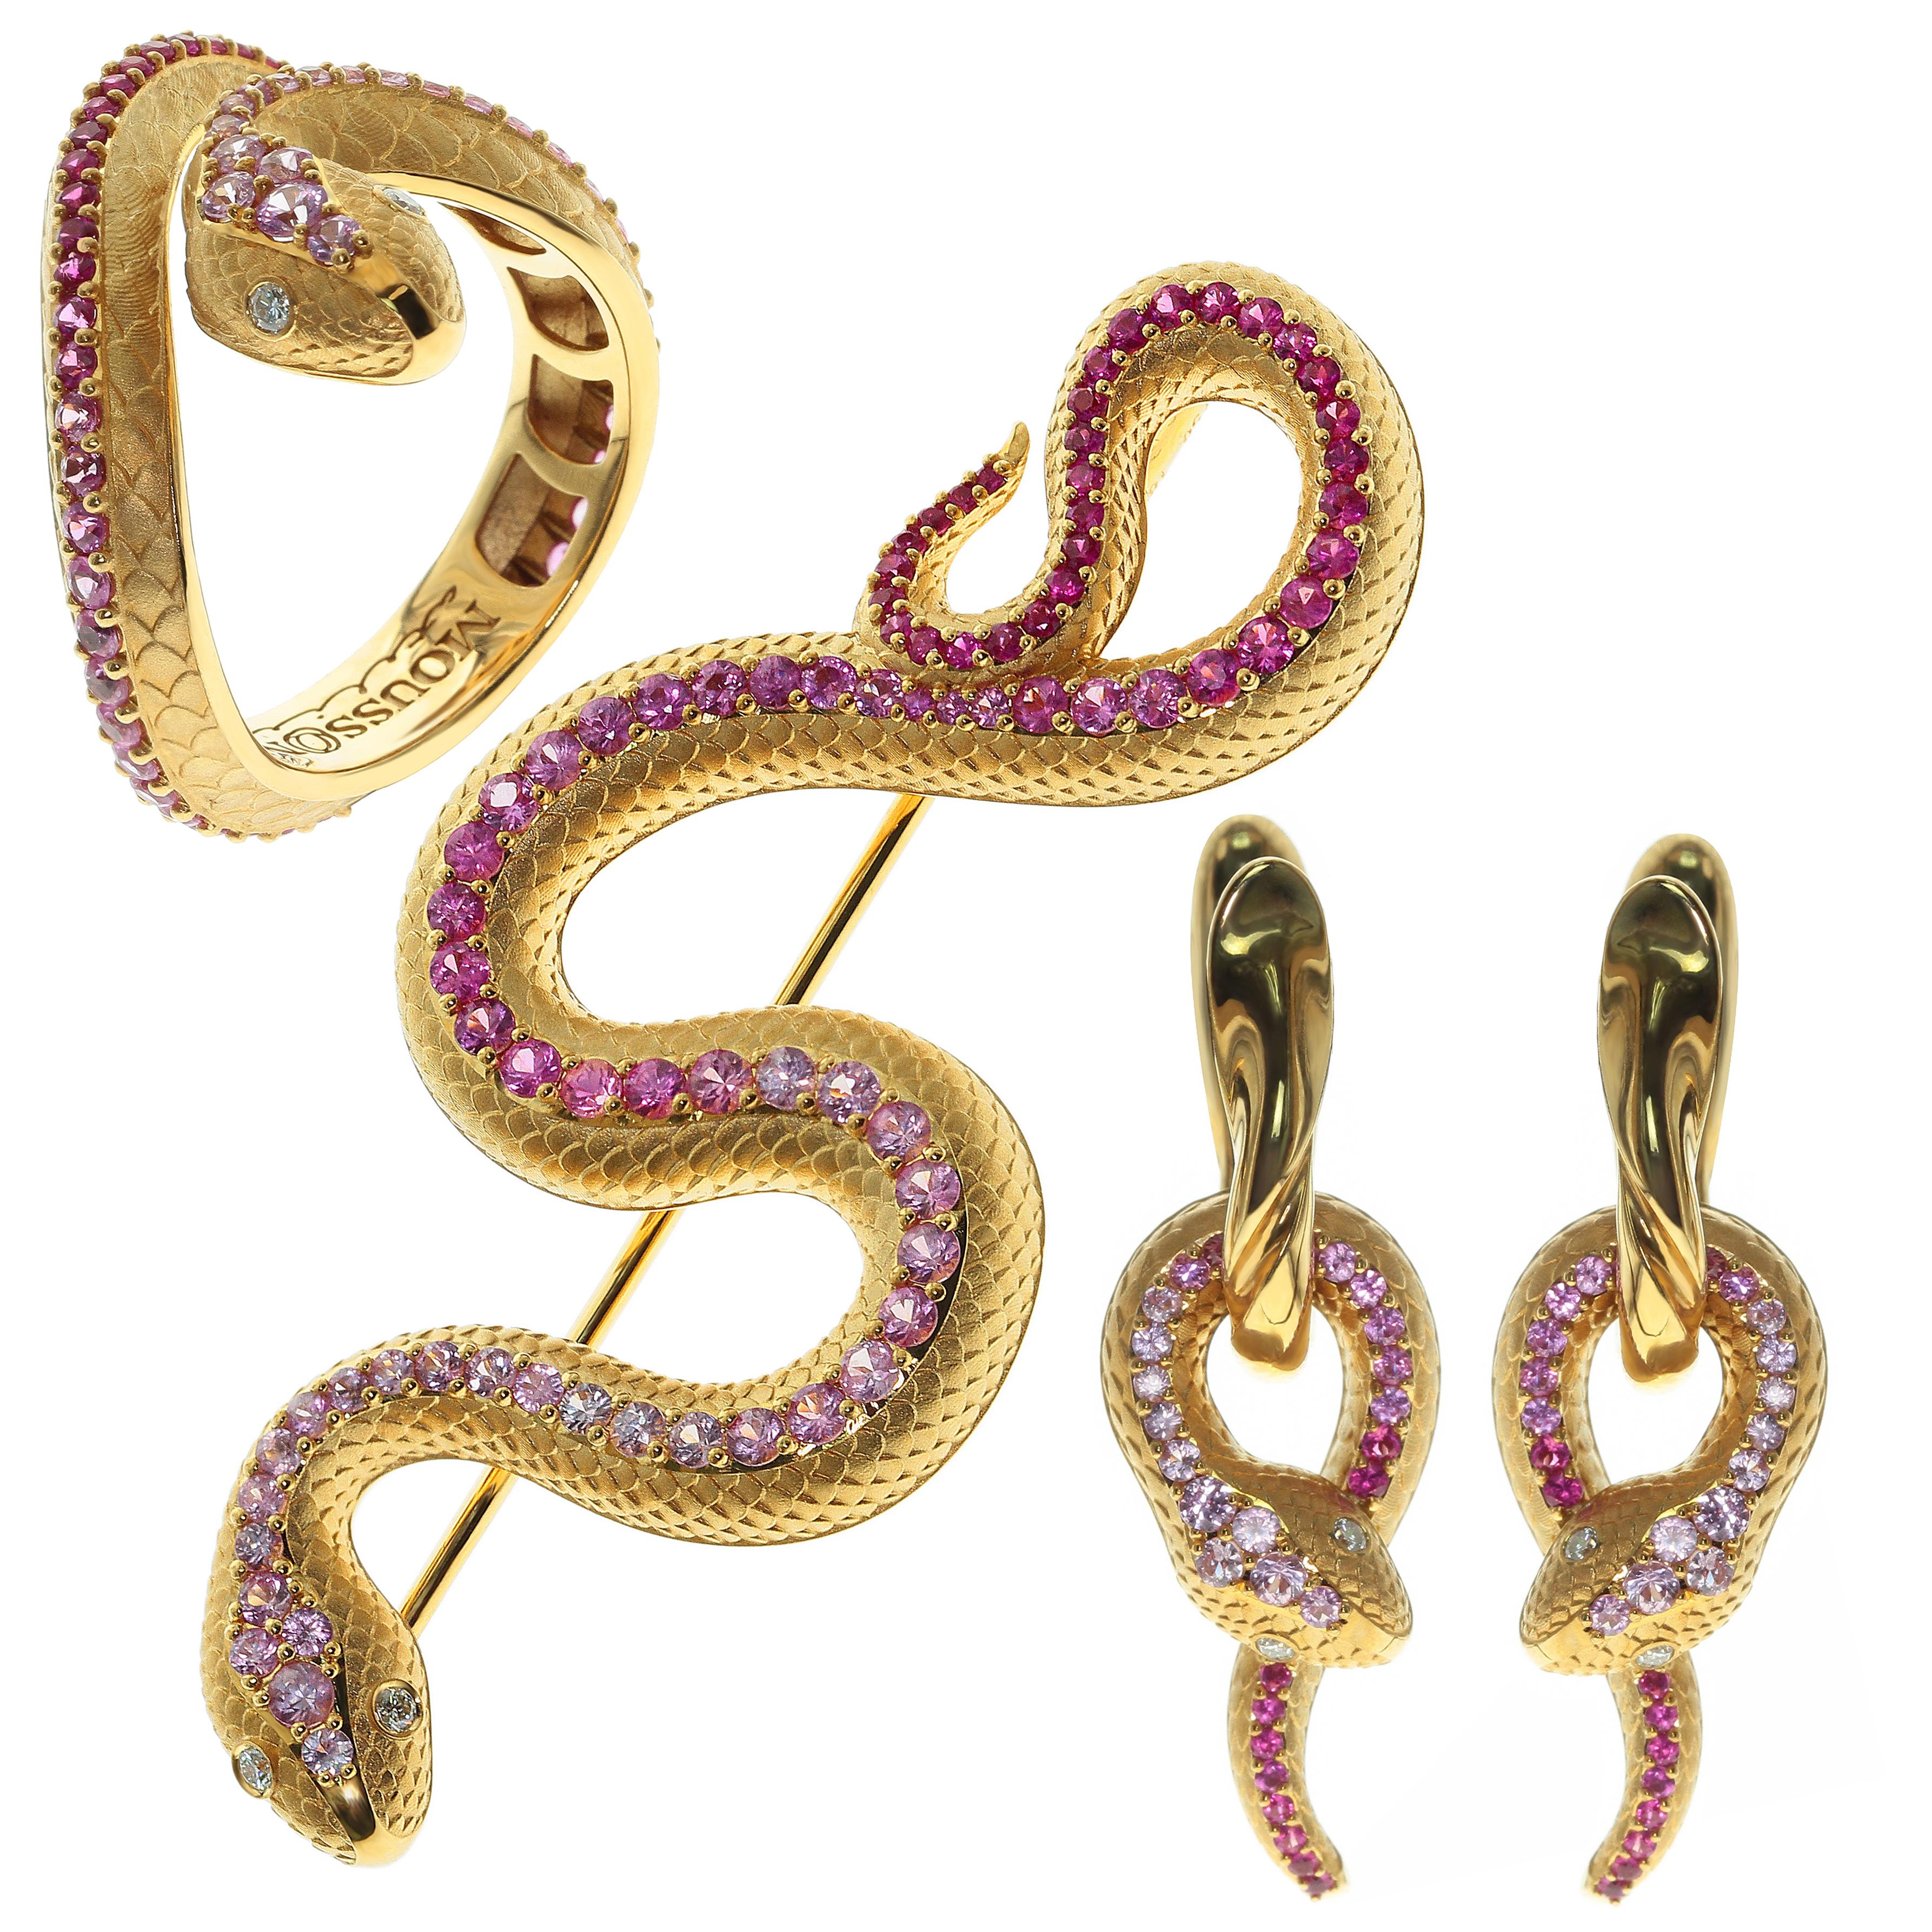 Parure bague et broche serpent en or jaune 18 carats, saphirs roses et diamants